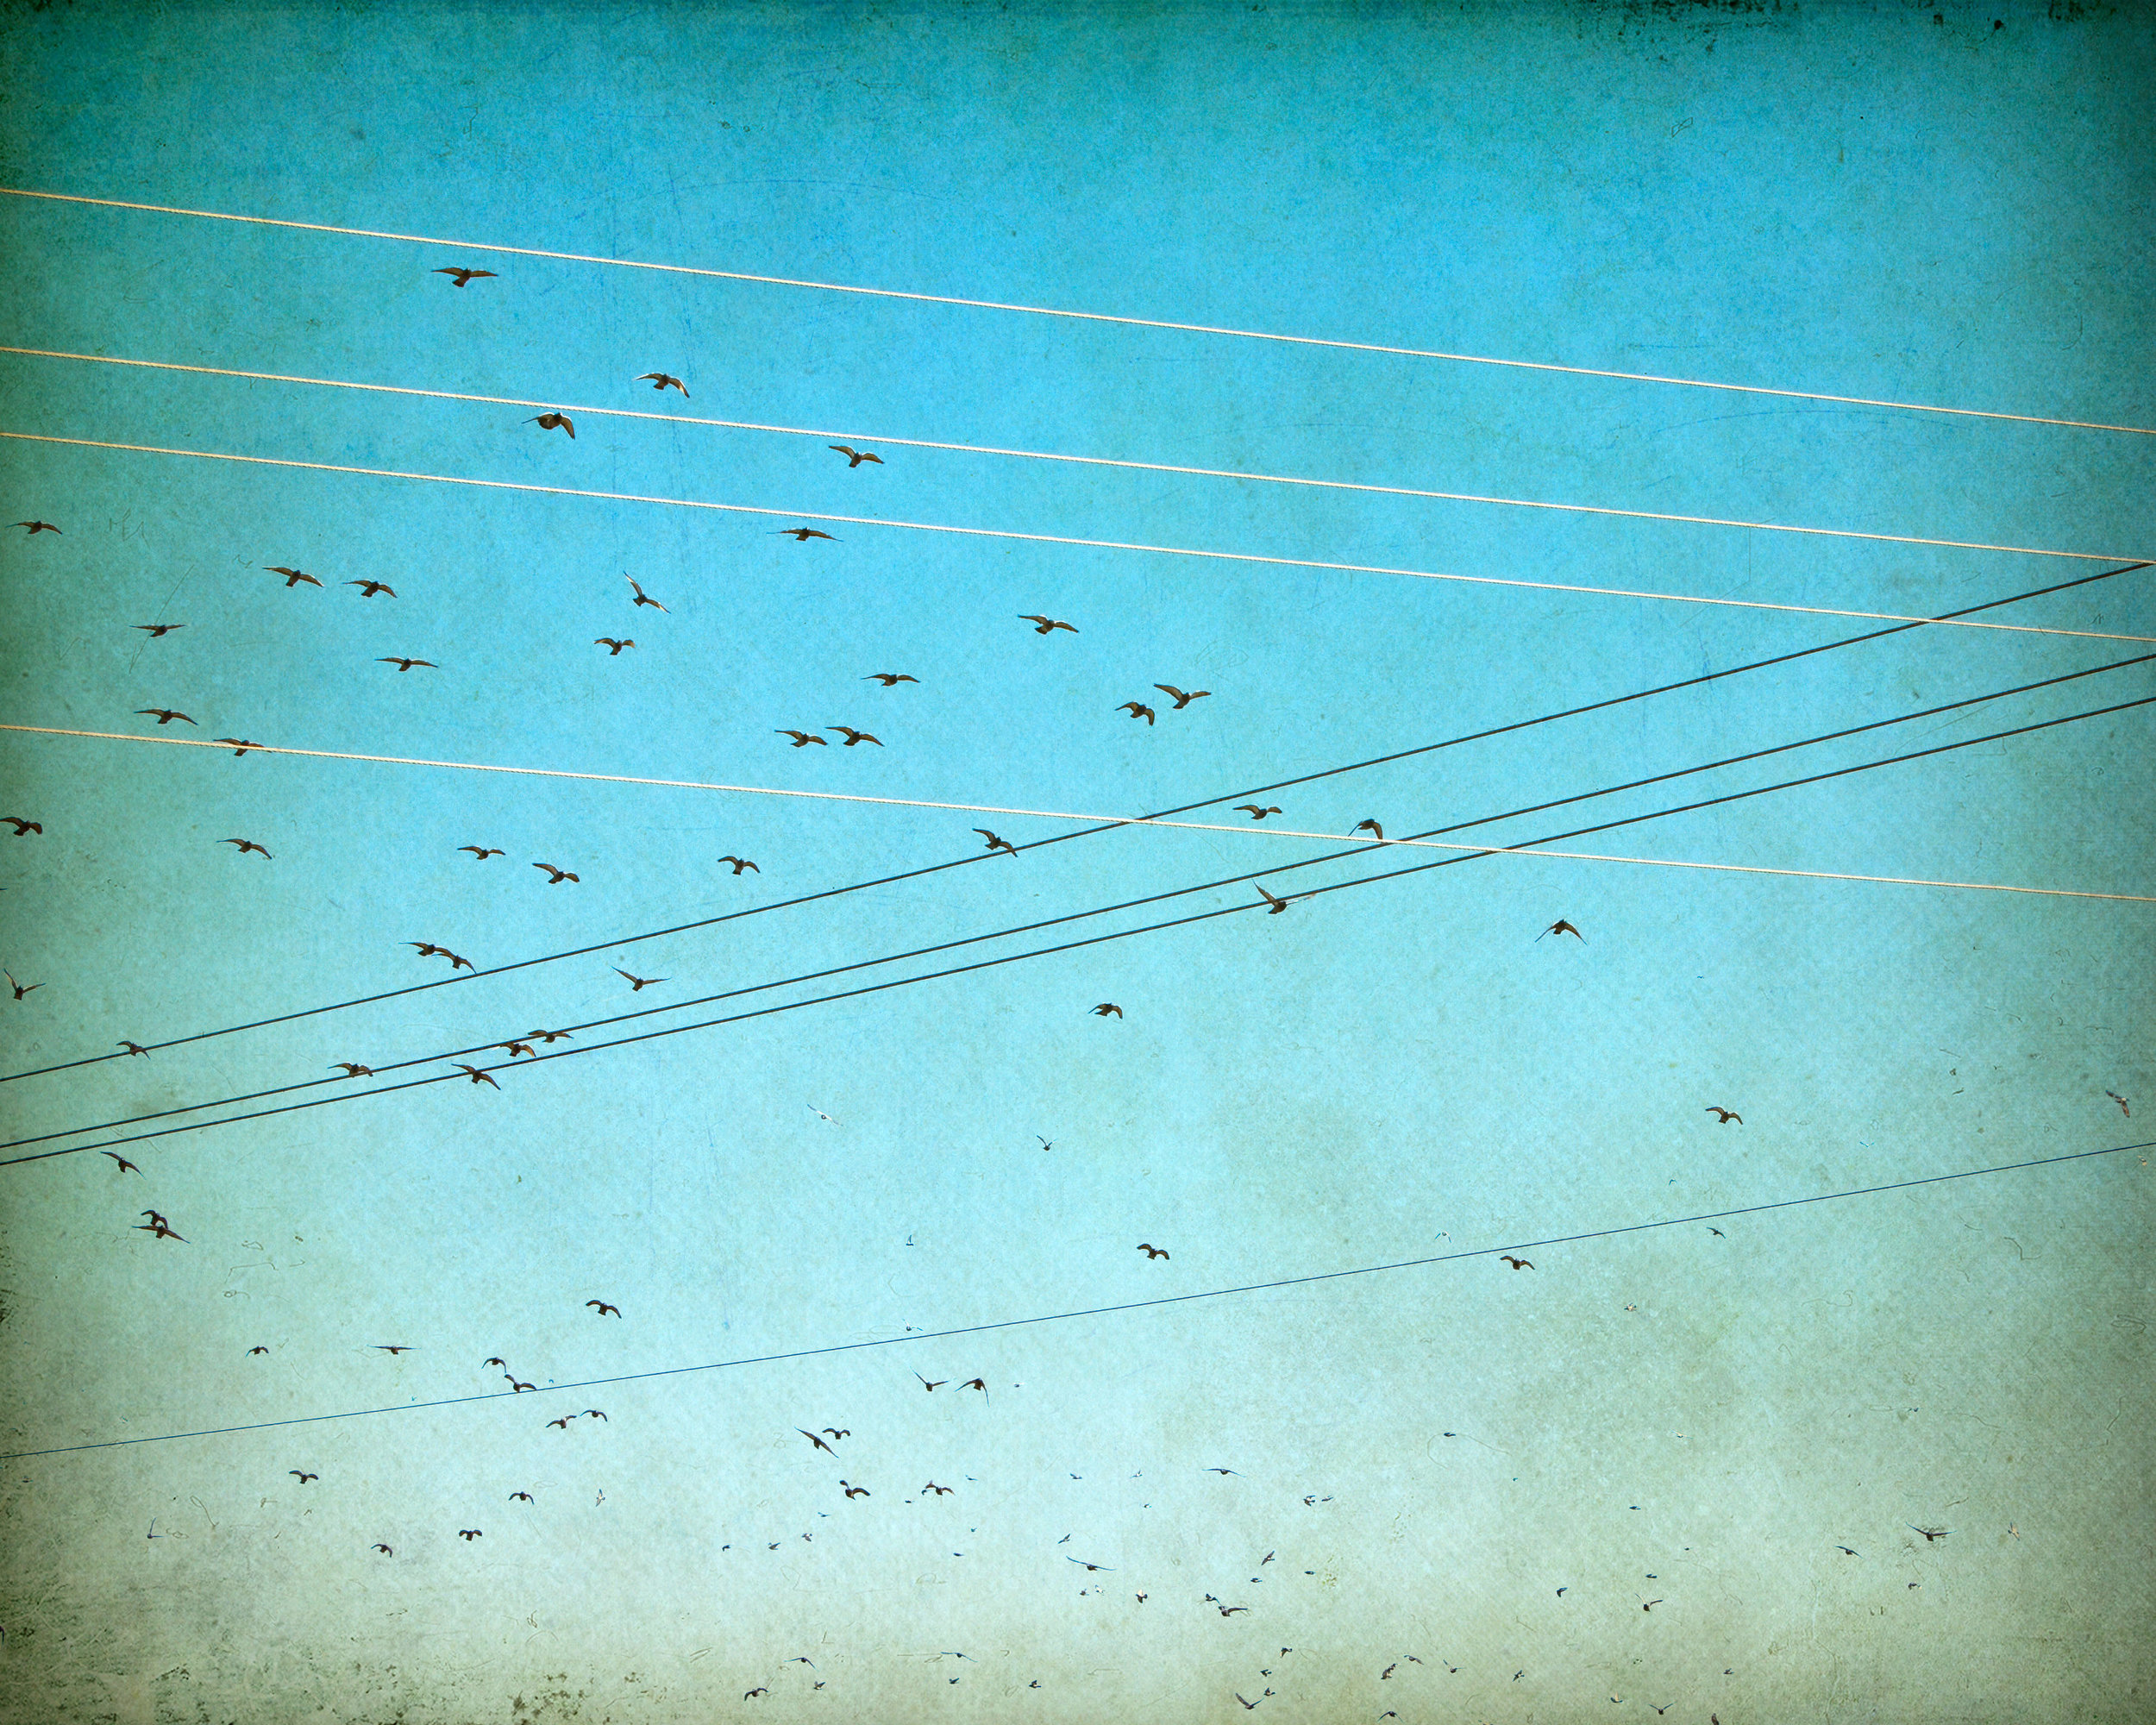 migration-birds-4x5r-3145.jpg